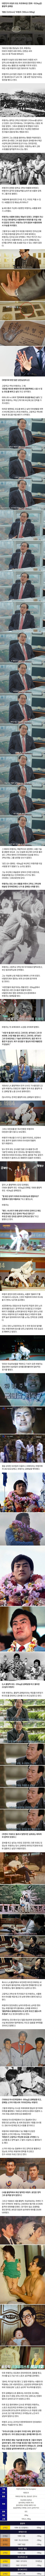 한국 유도 사상 유일한 95kg급 올림픽 금메달